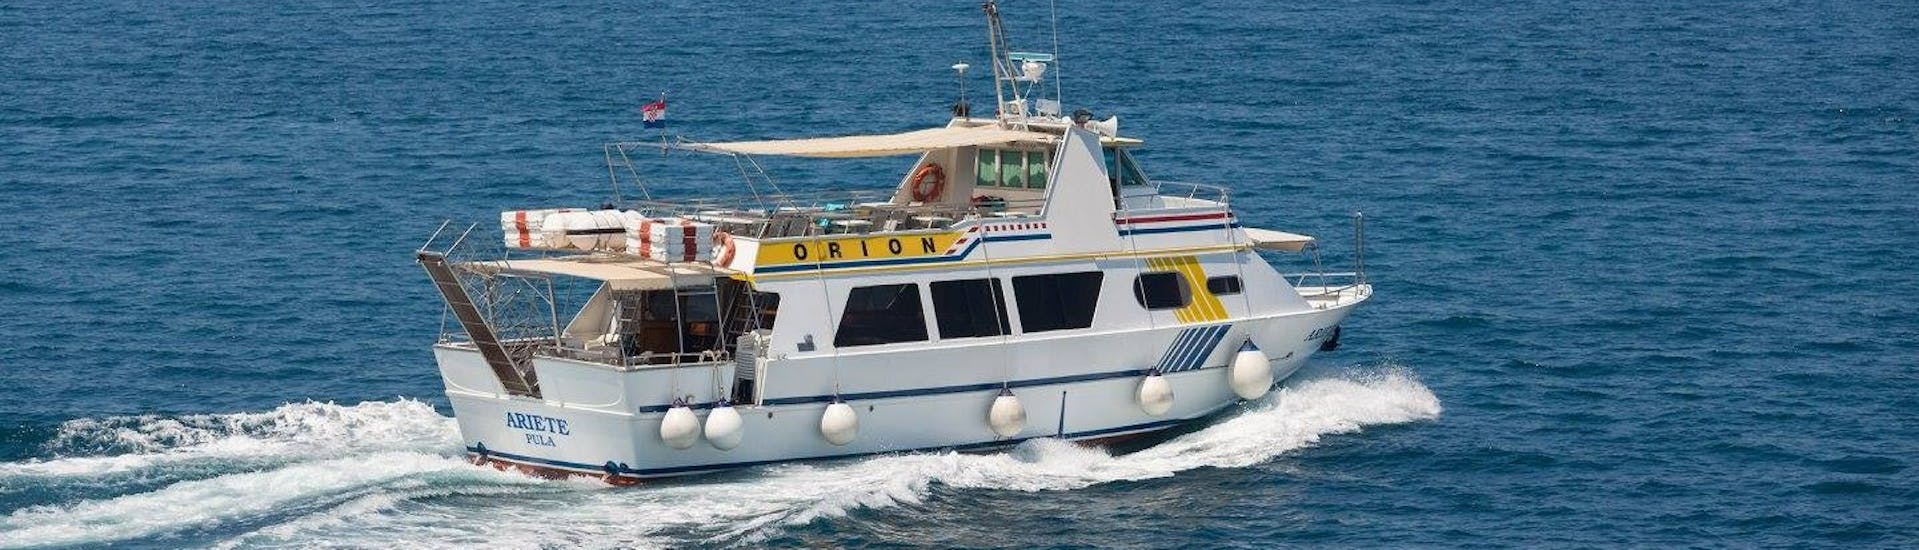 El barco de Orion Travel Pula en el mar durante la excursión en barco de Pula a Rovinj.